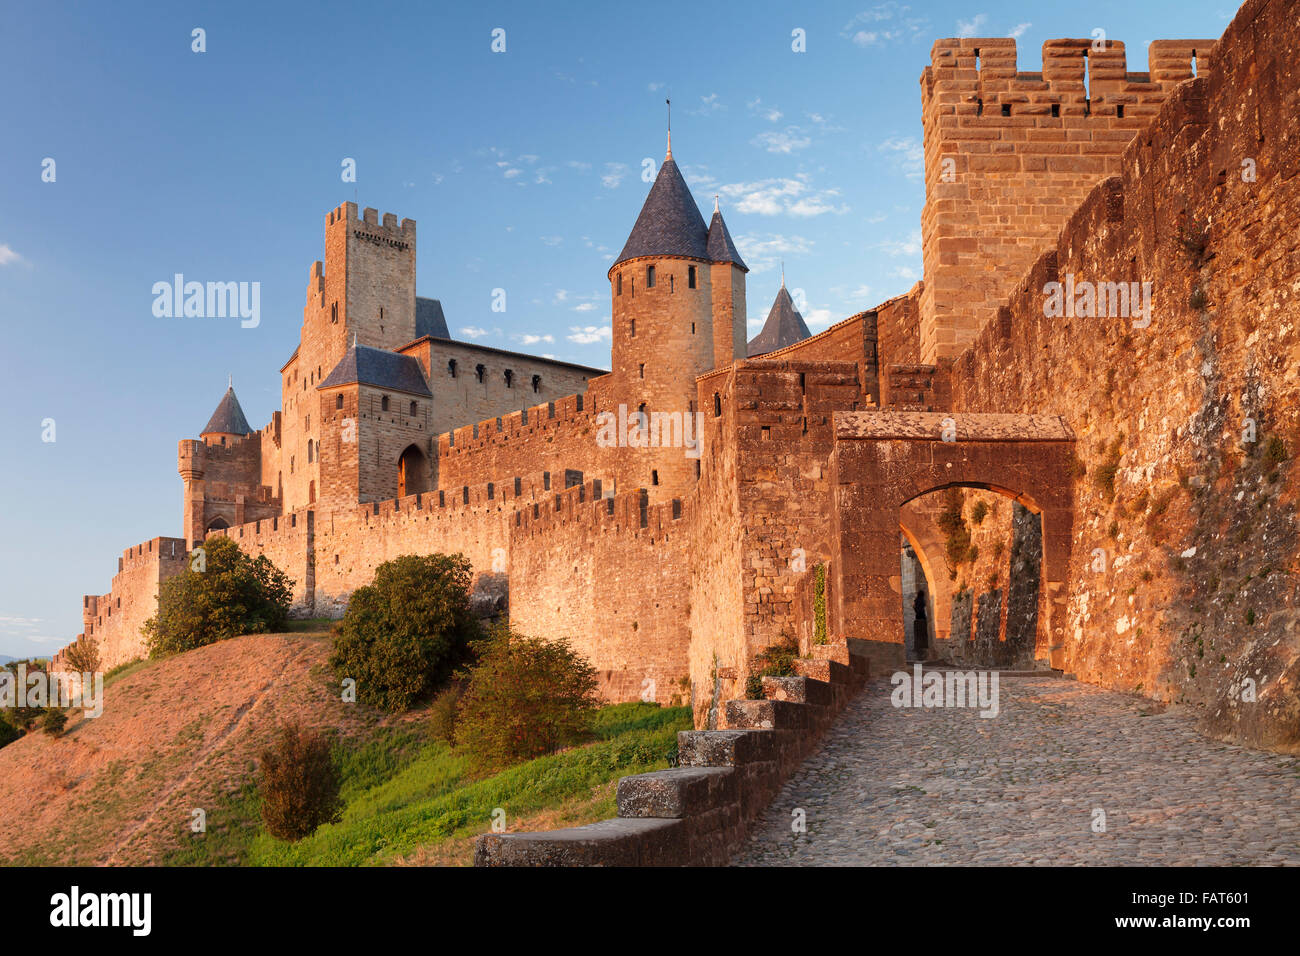 La cite de carcassonne hi-res stock photography and images - Alamy